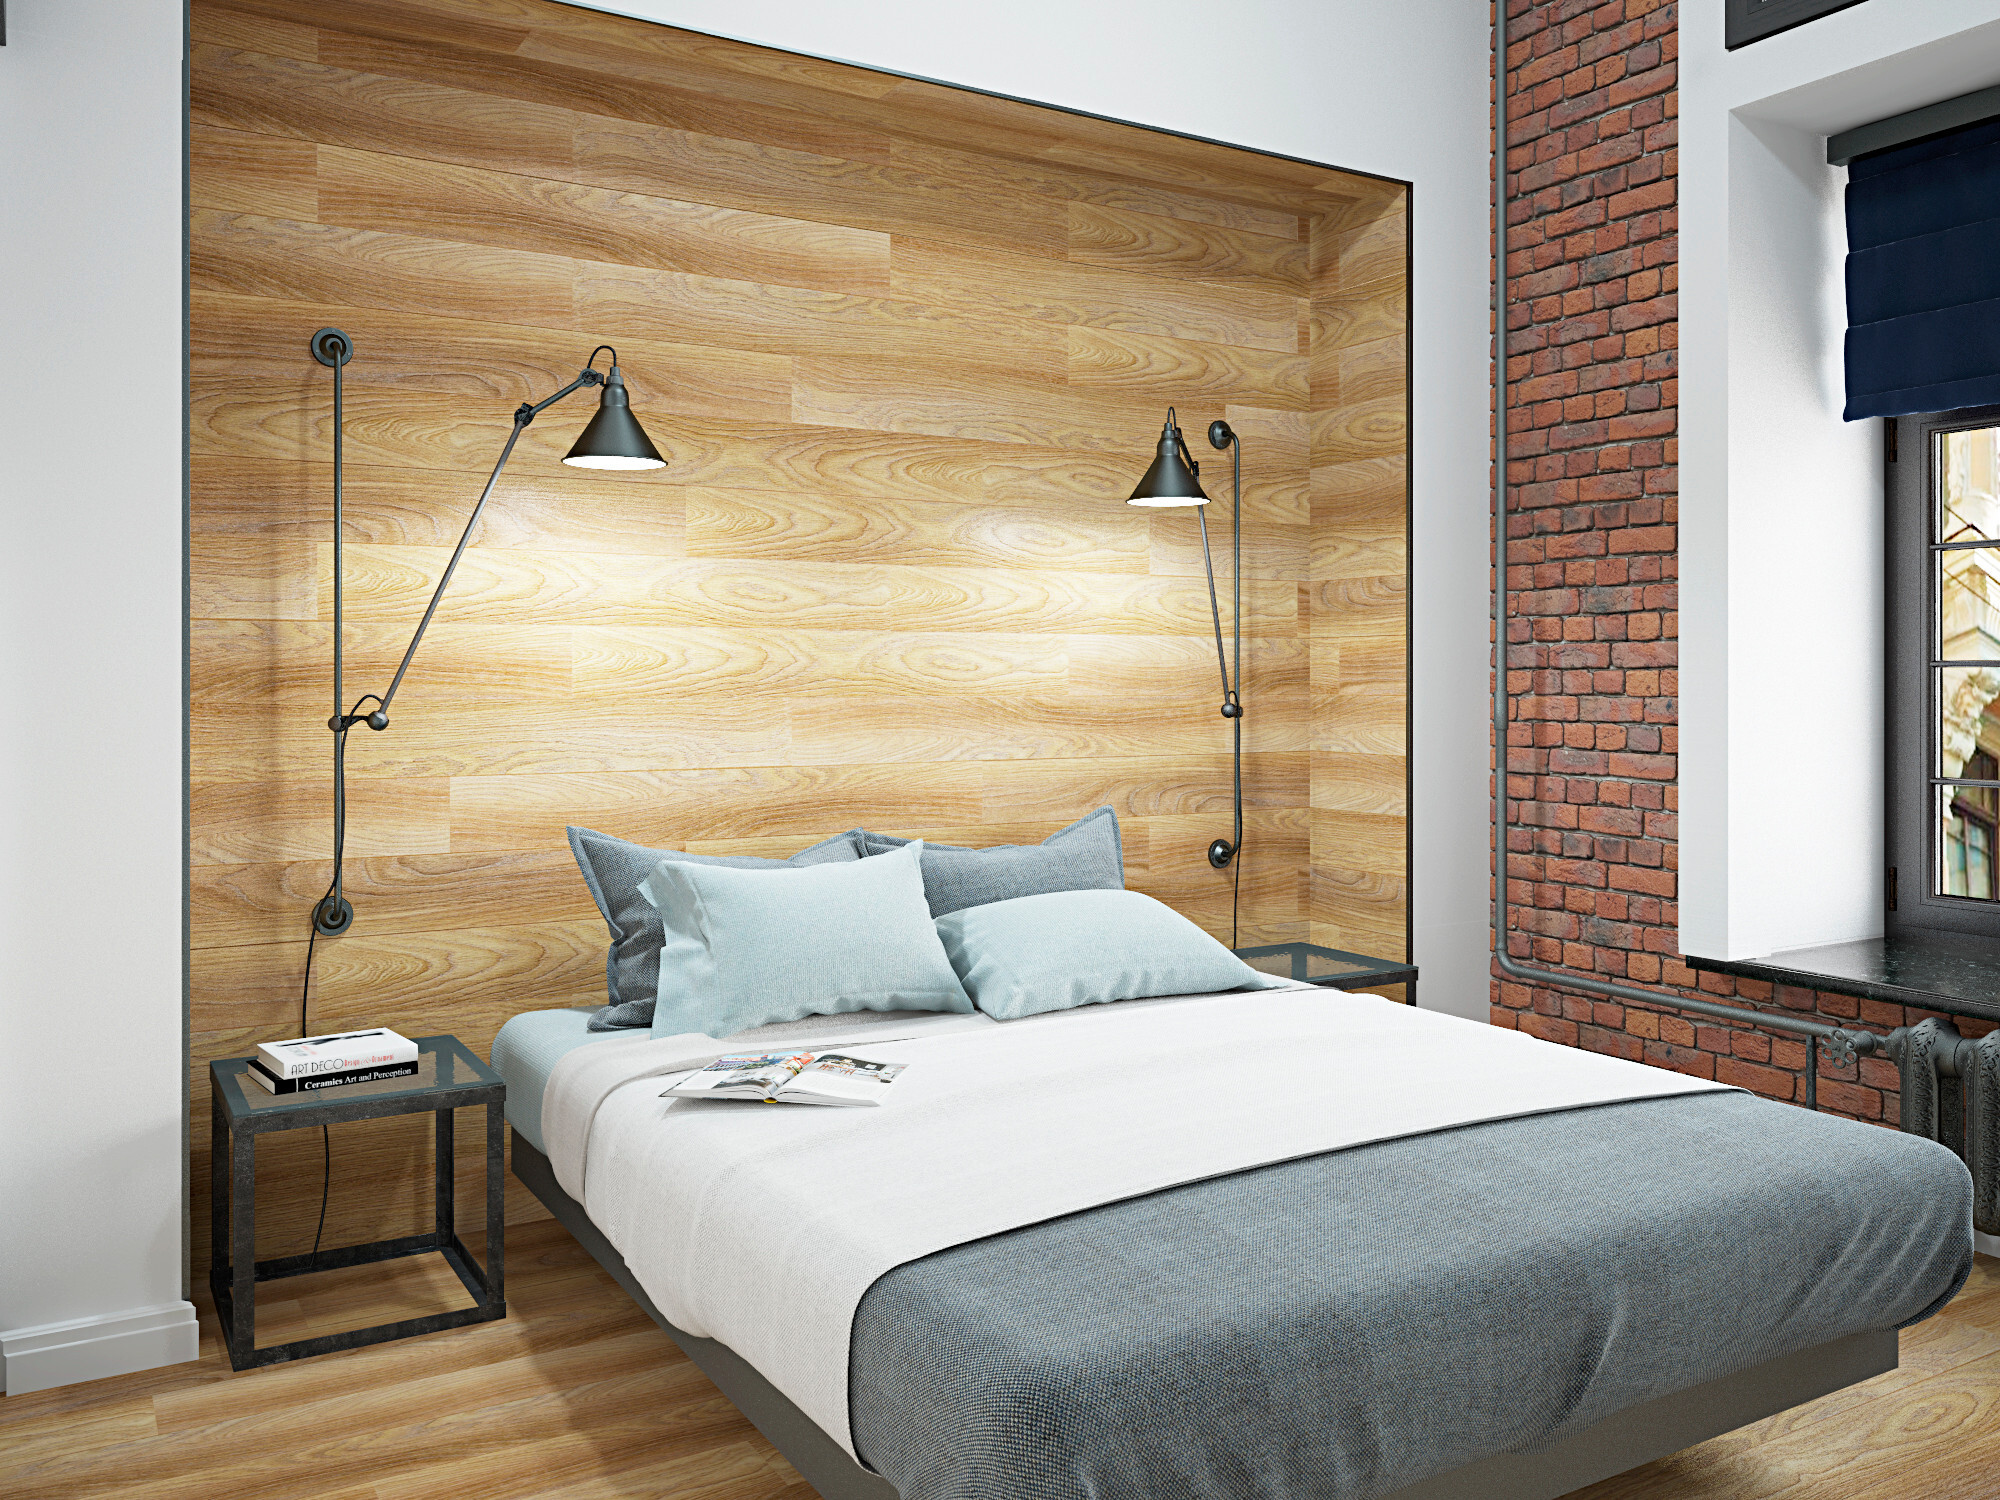 Интерьер спальни с бра над кроватью, подсветкой настенной и светильниками над кроватью в стиле лофт